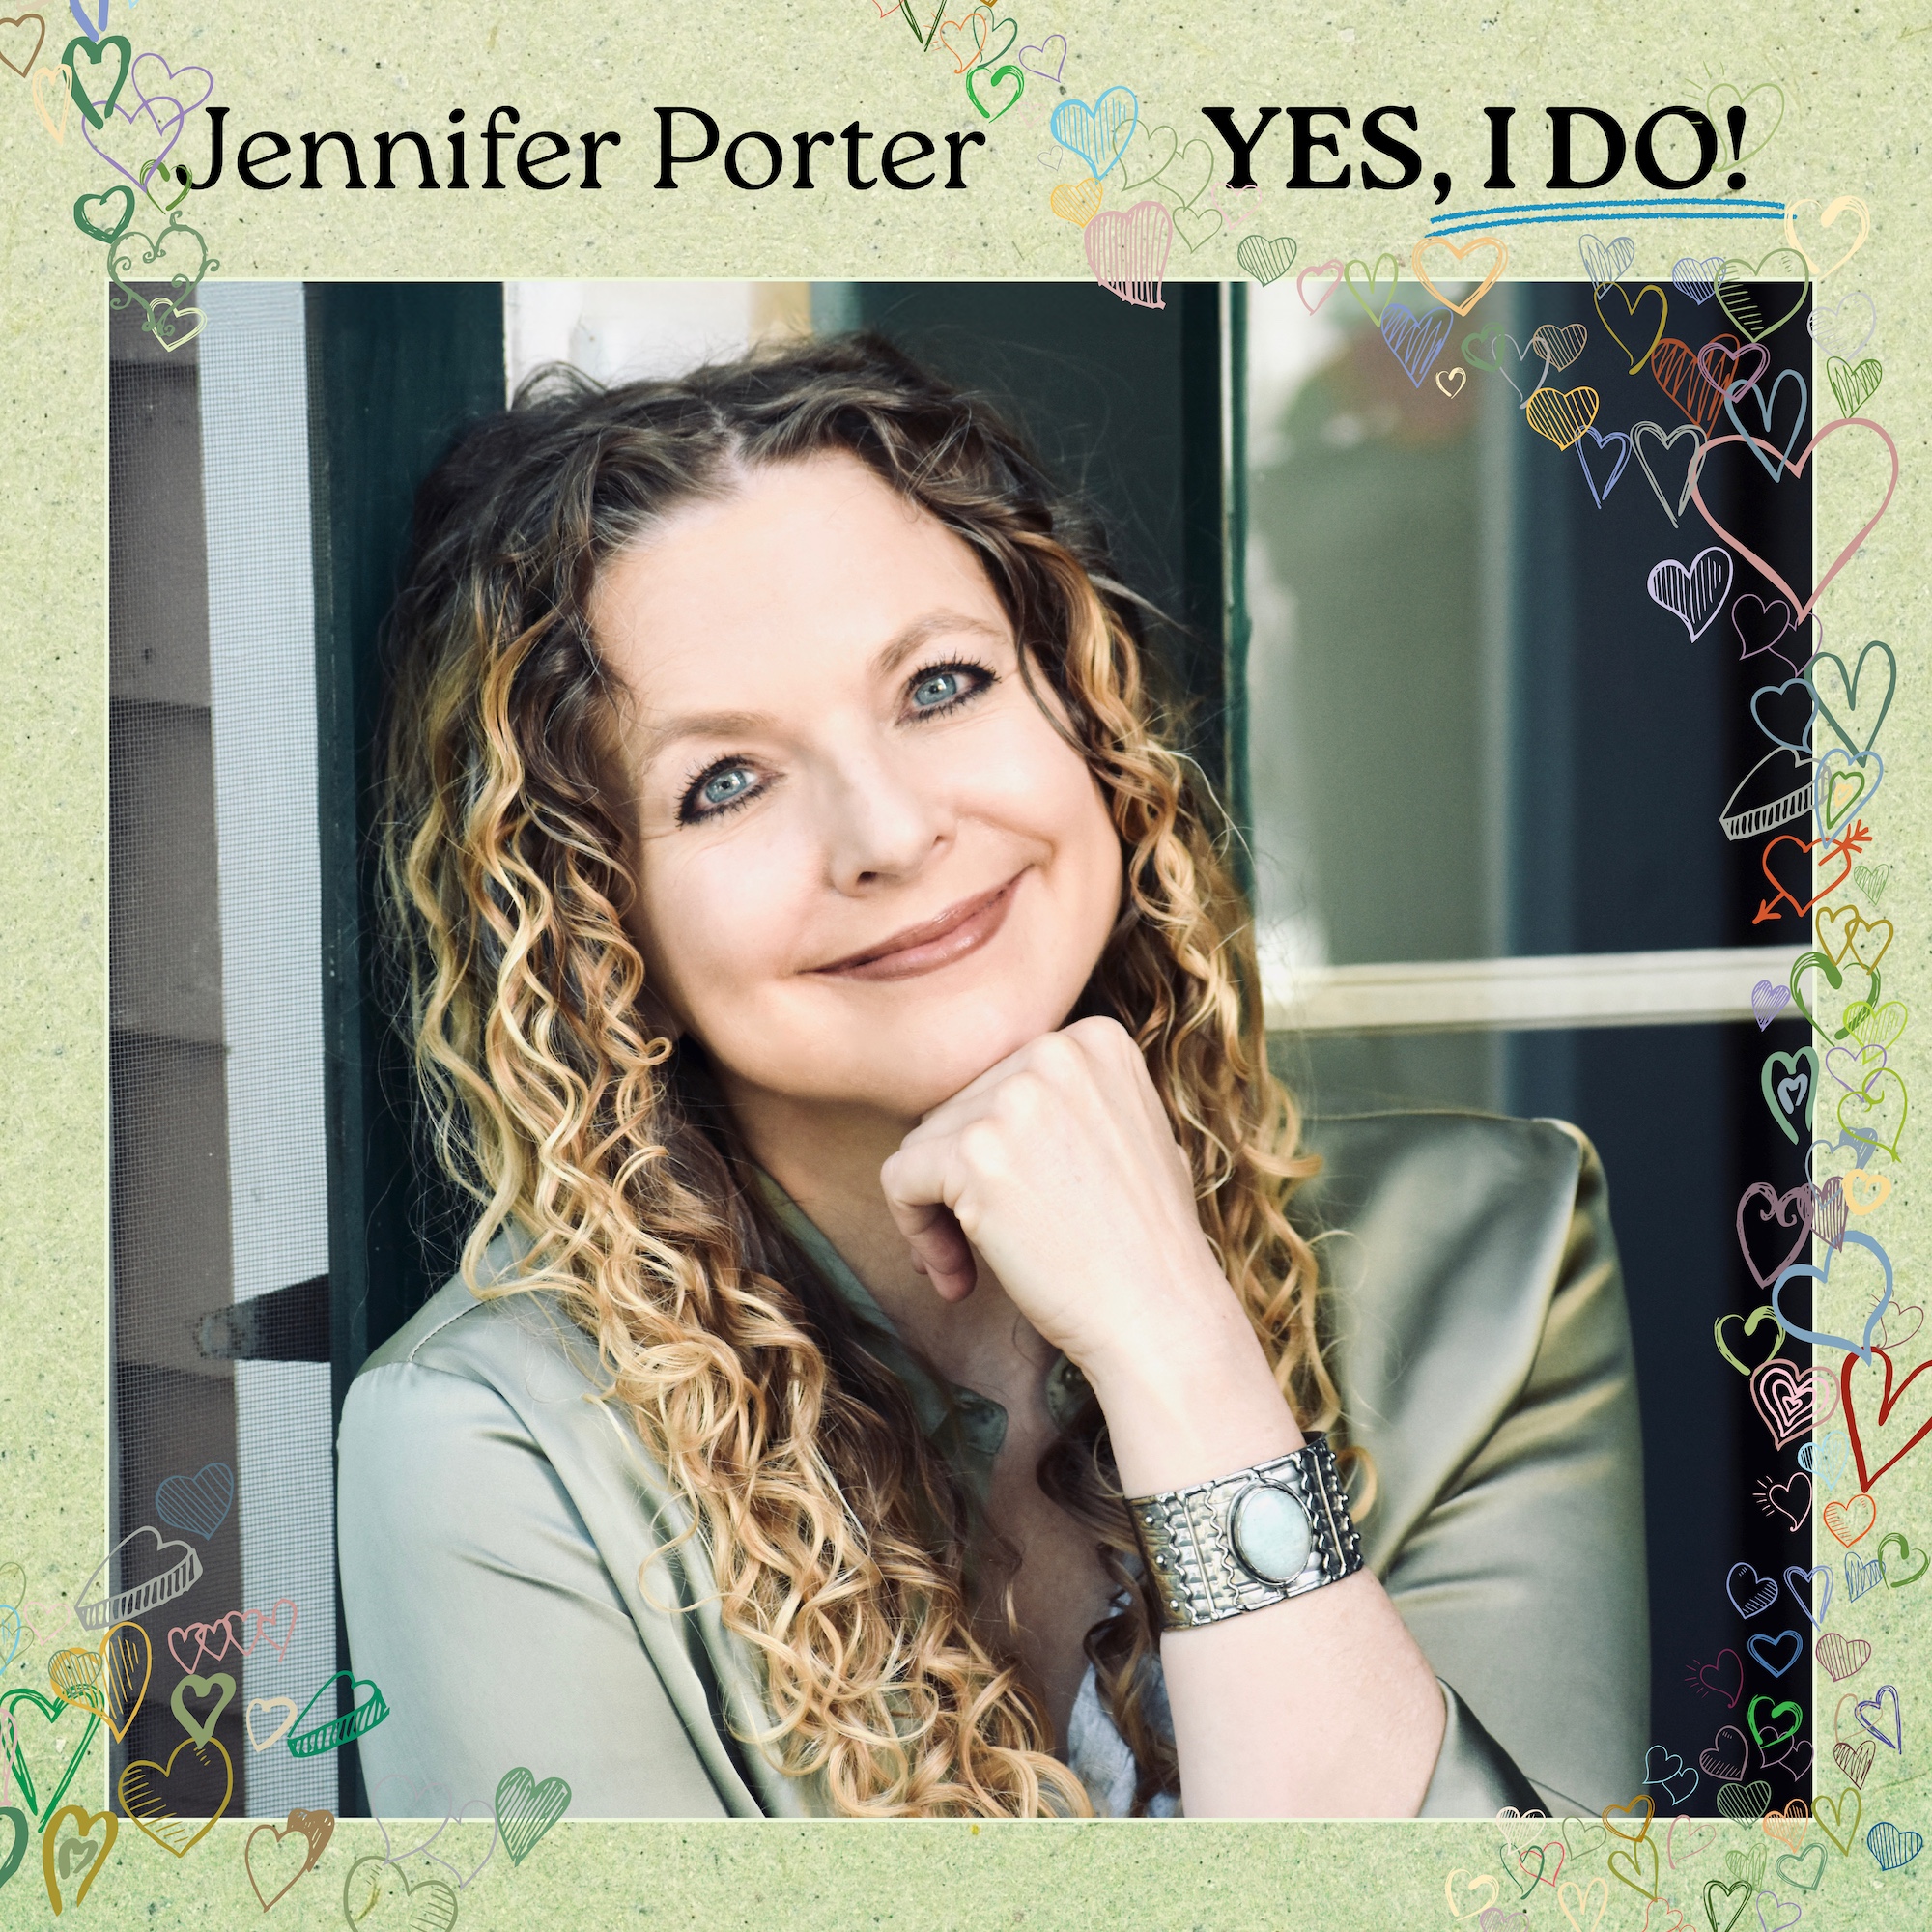 Jennifer Porter To Release New Album, “Yes, I Do!”